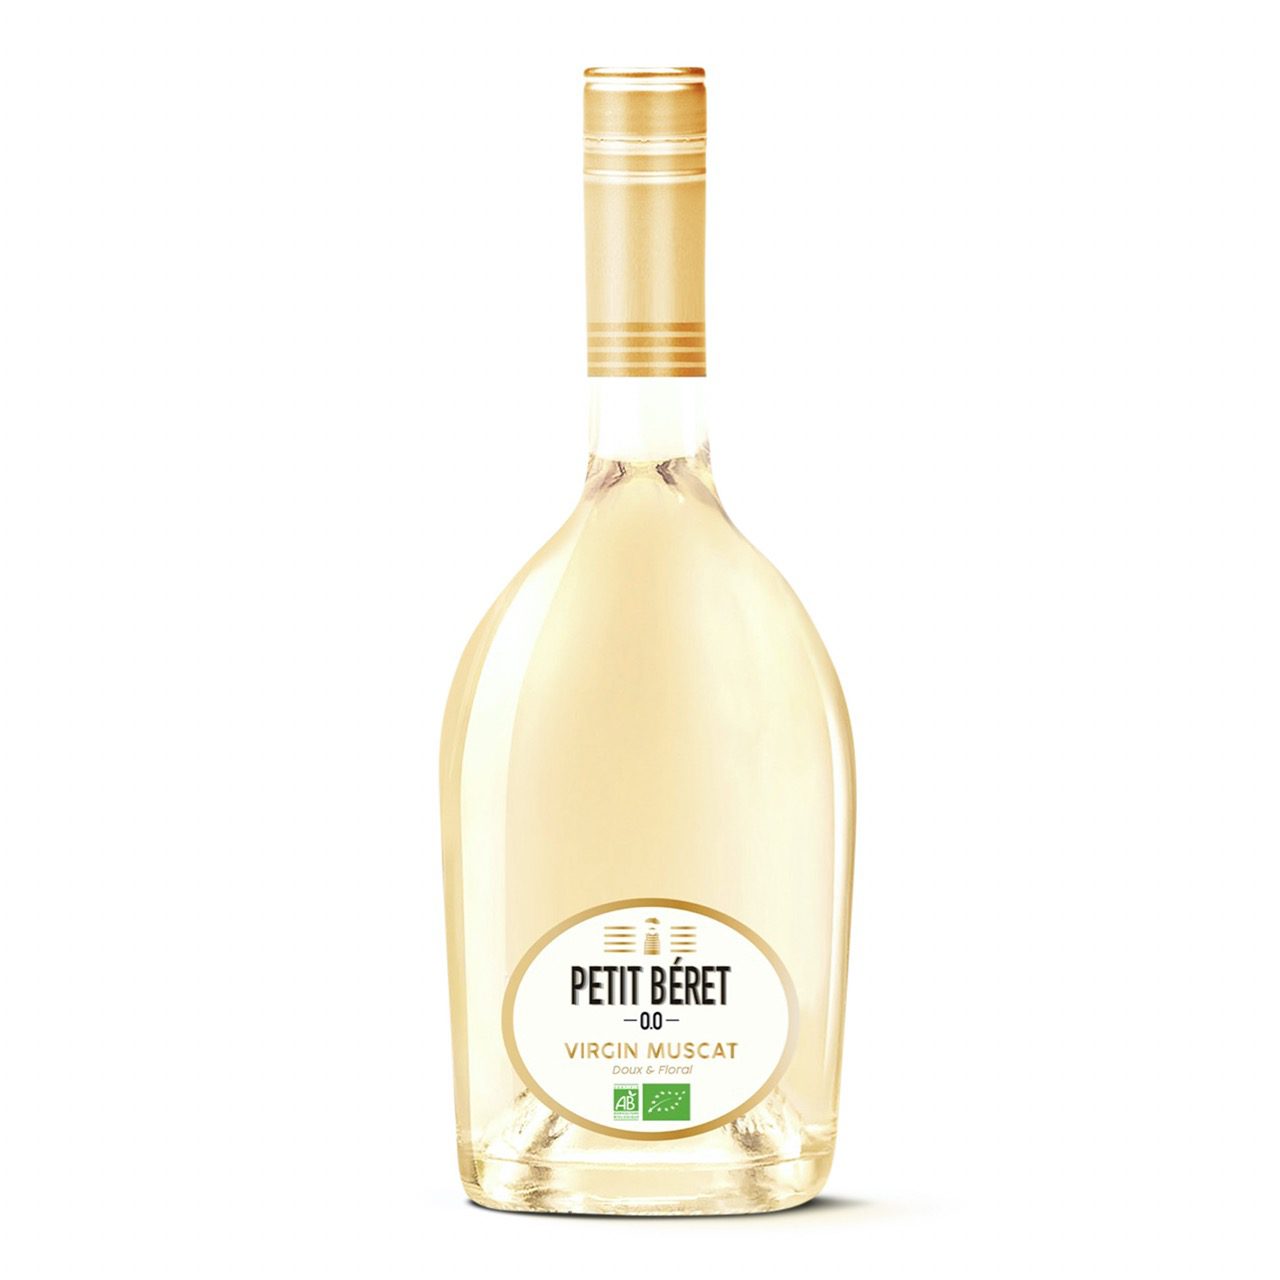 Le Petit Béret alkoholfreier Virgin Muscat - Bio- 740ml